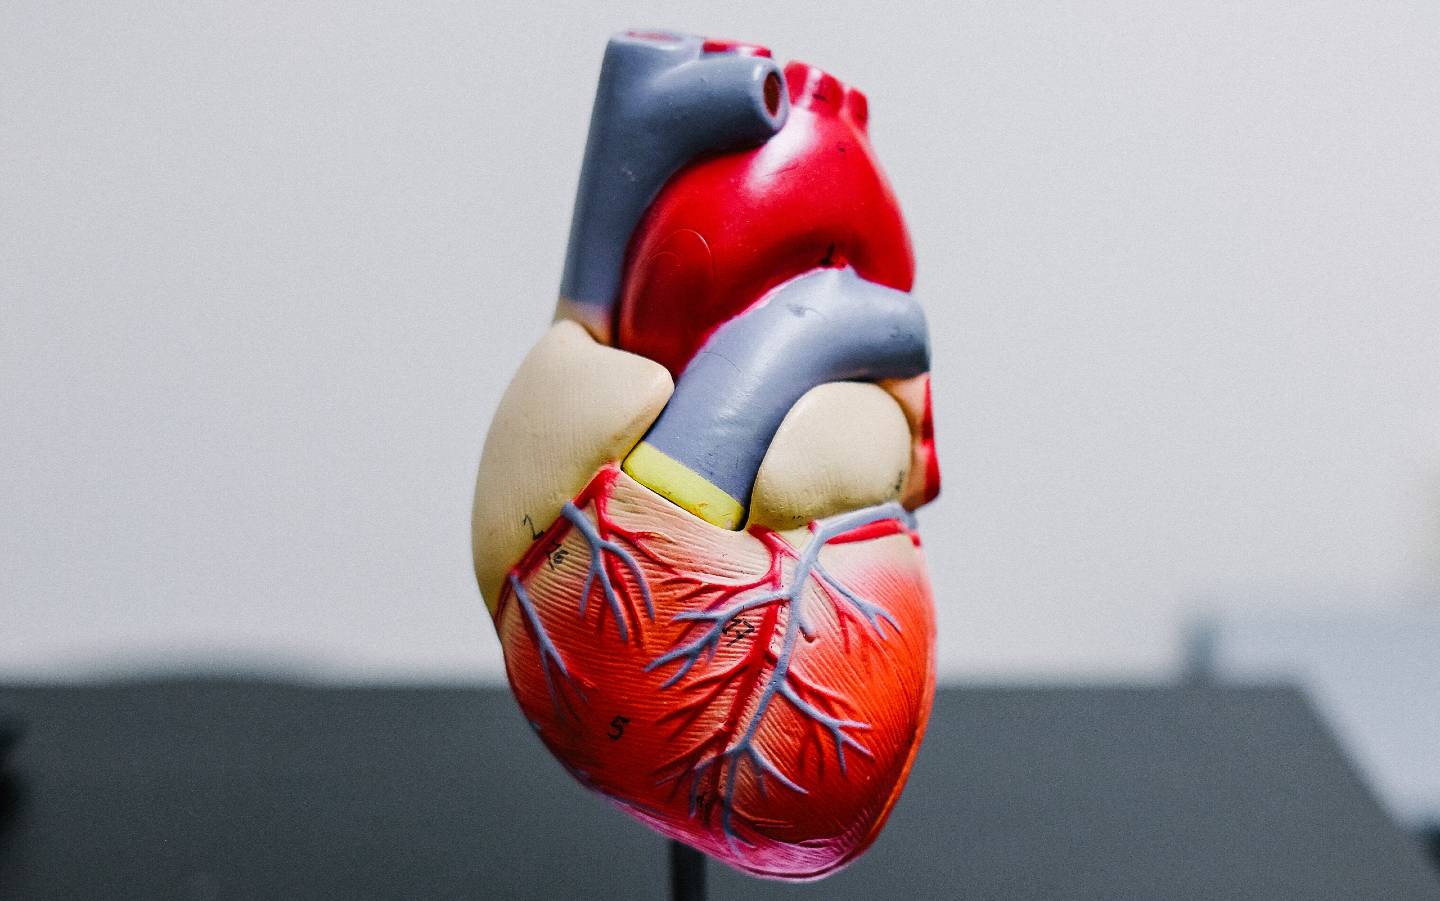 des-milliers-de-stimulateurs-cardiaques-rappeles-pour-risque-de-court-circuit-dangereux